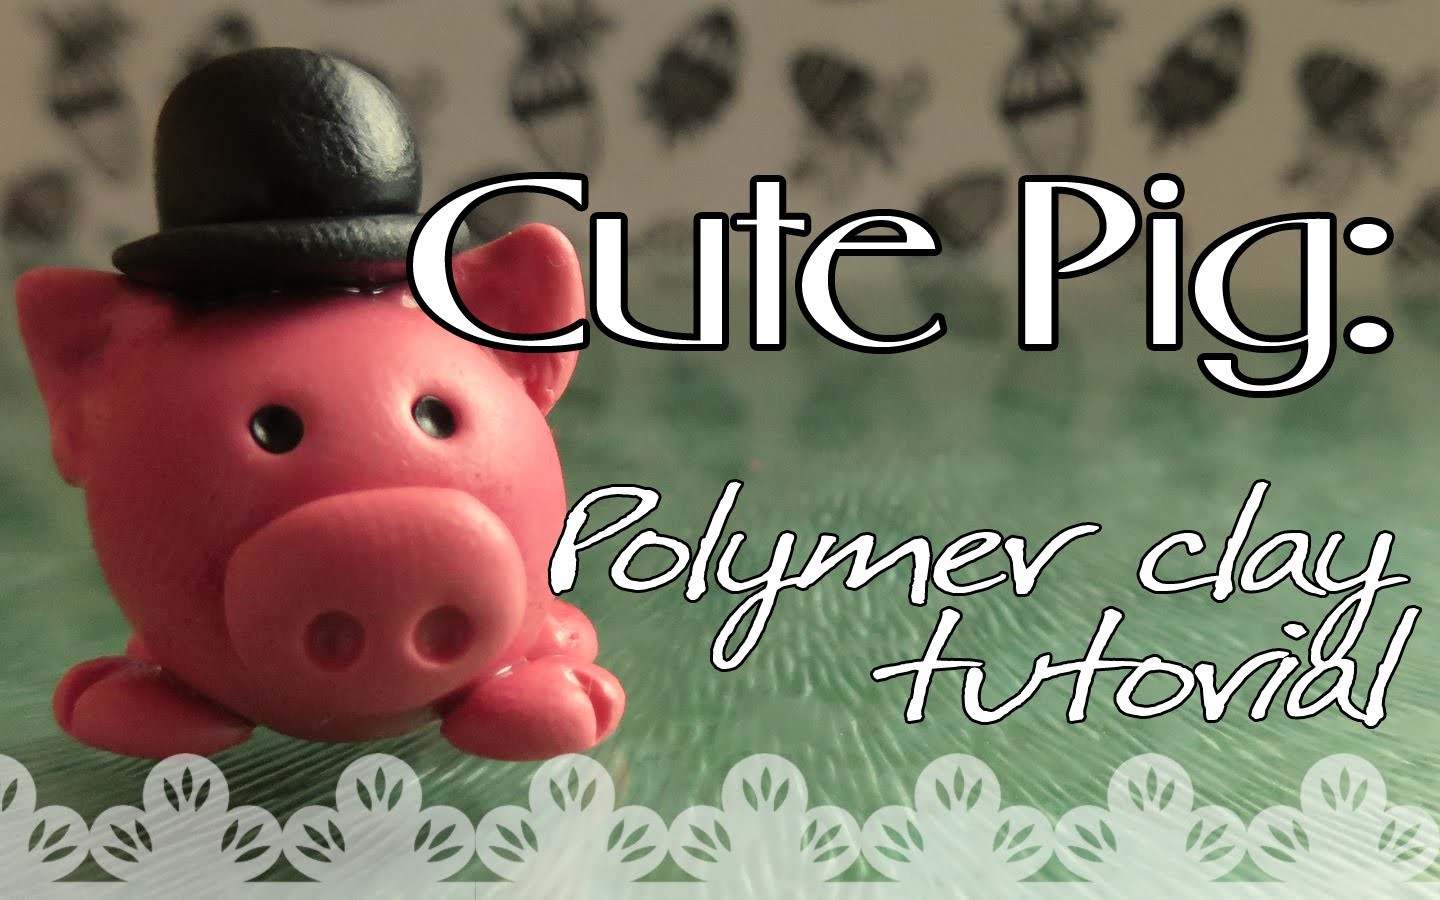 Cute Pig: Polymer clay tutorial | Cerdito: Tutorial Arcilla Polimérica